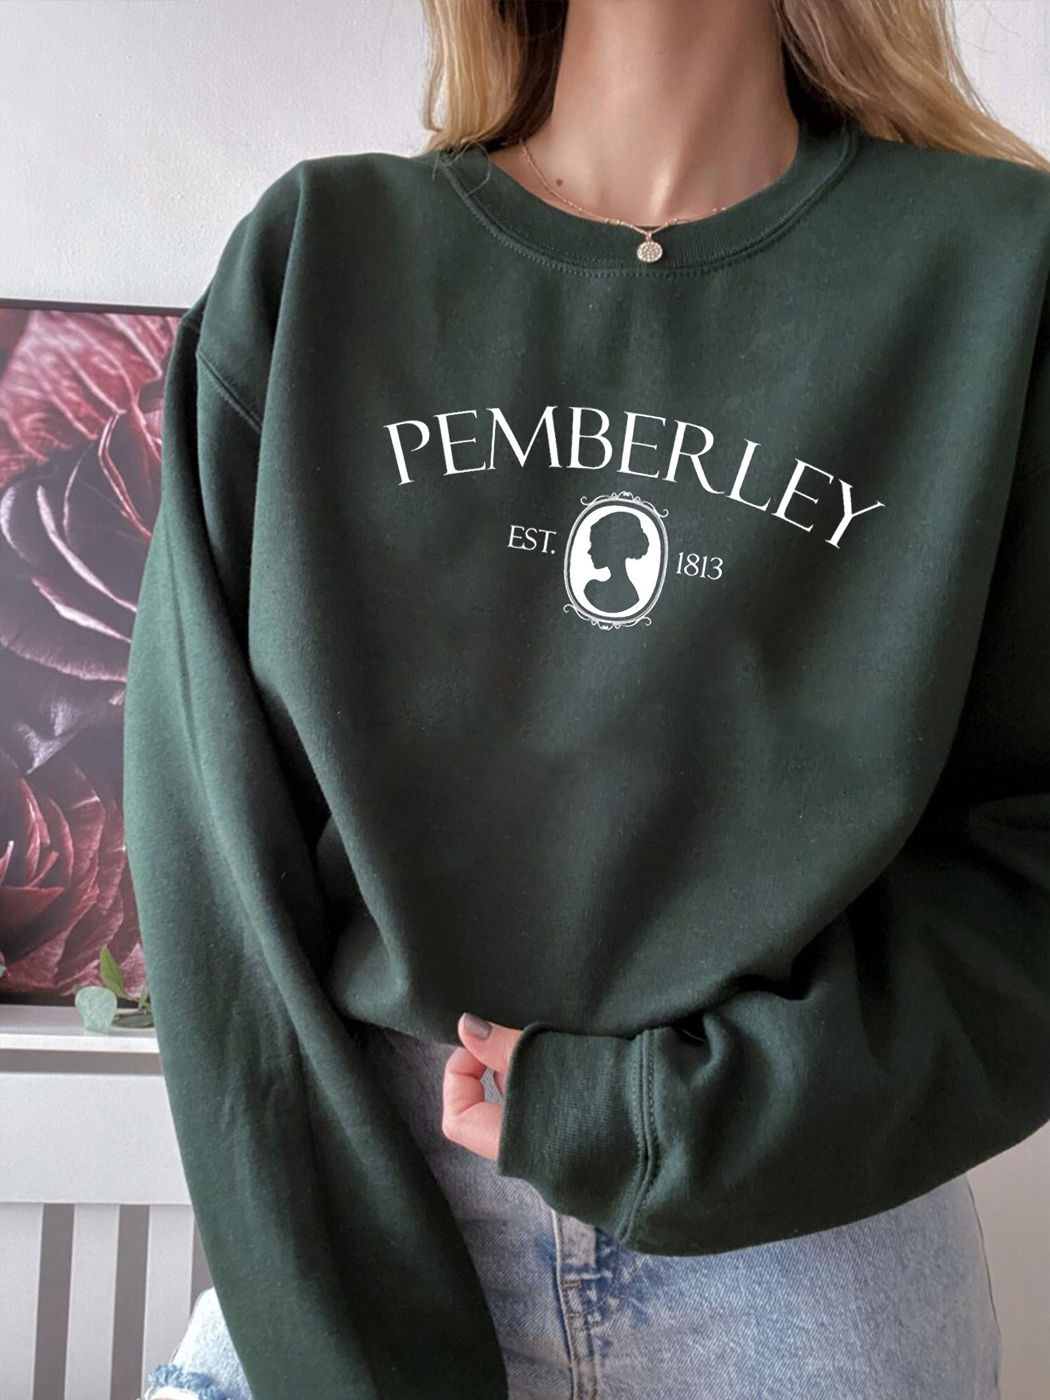 Women's Pemberley Sweatshirt,Pride And Prejudice,Vintage Print Crewneck Sweatshirt